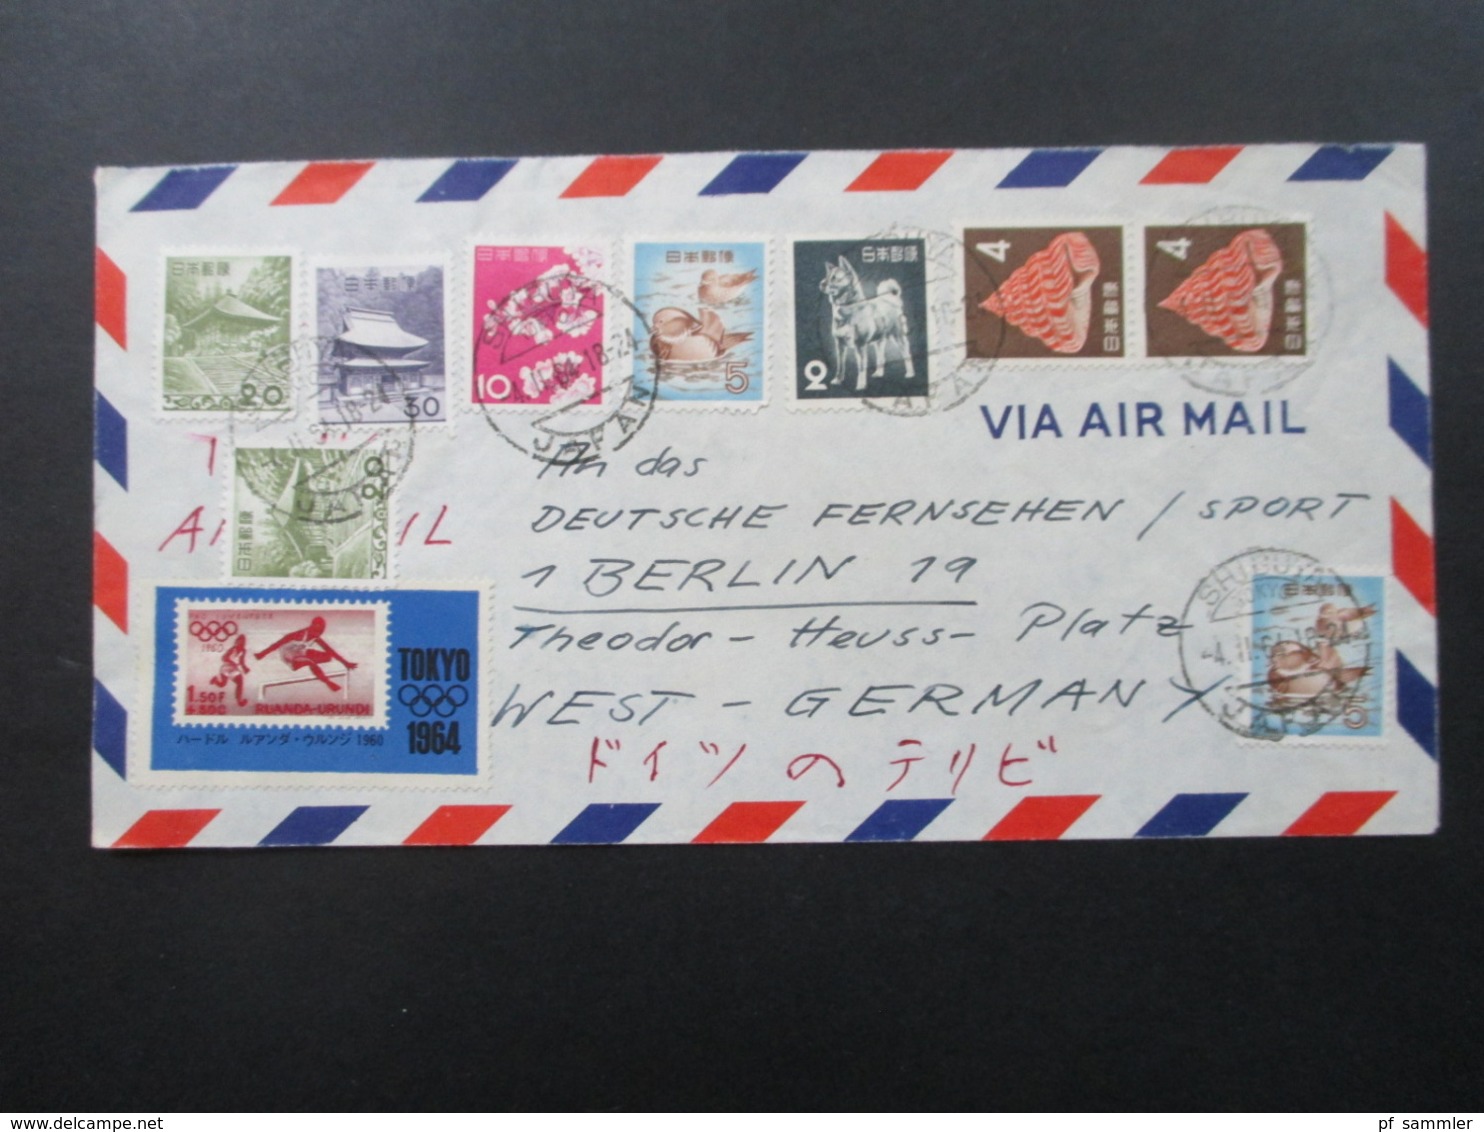 Japan 1964 Luftpostbrief / Via Air Mail Mit 11 Marken Auch Tokyo 1964 An Das Deutsche Fernsehen / Sport In Berlin - Briefe U. Dokumente